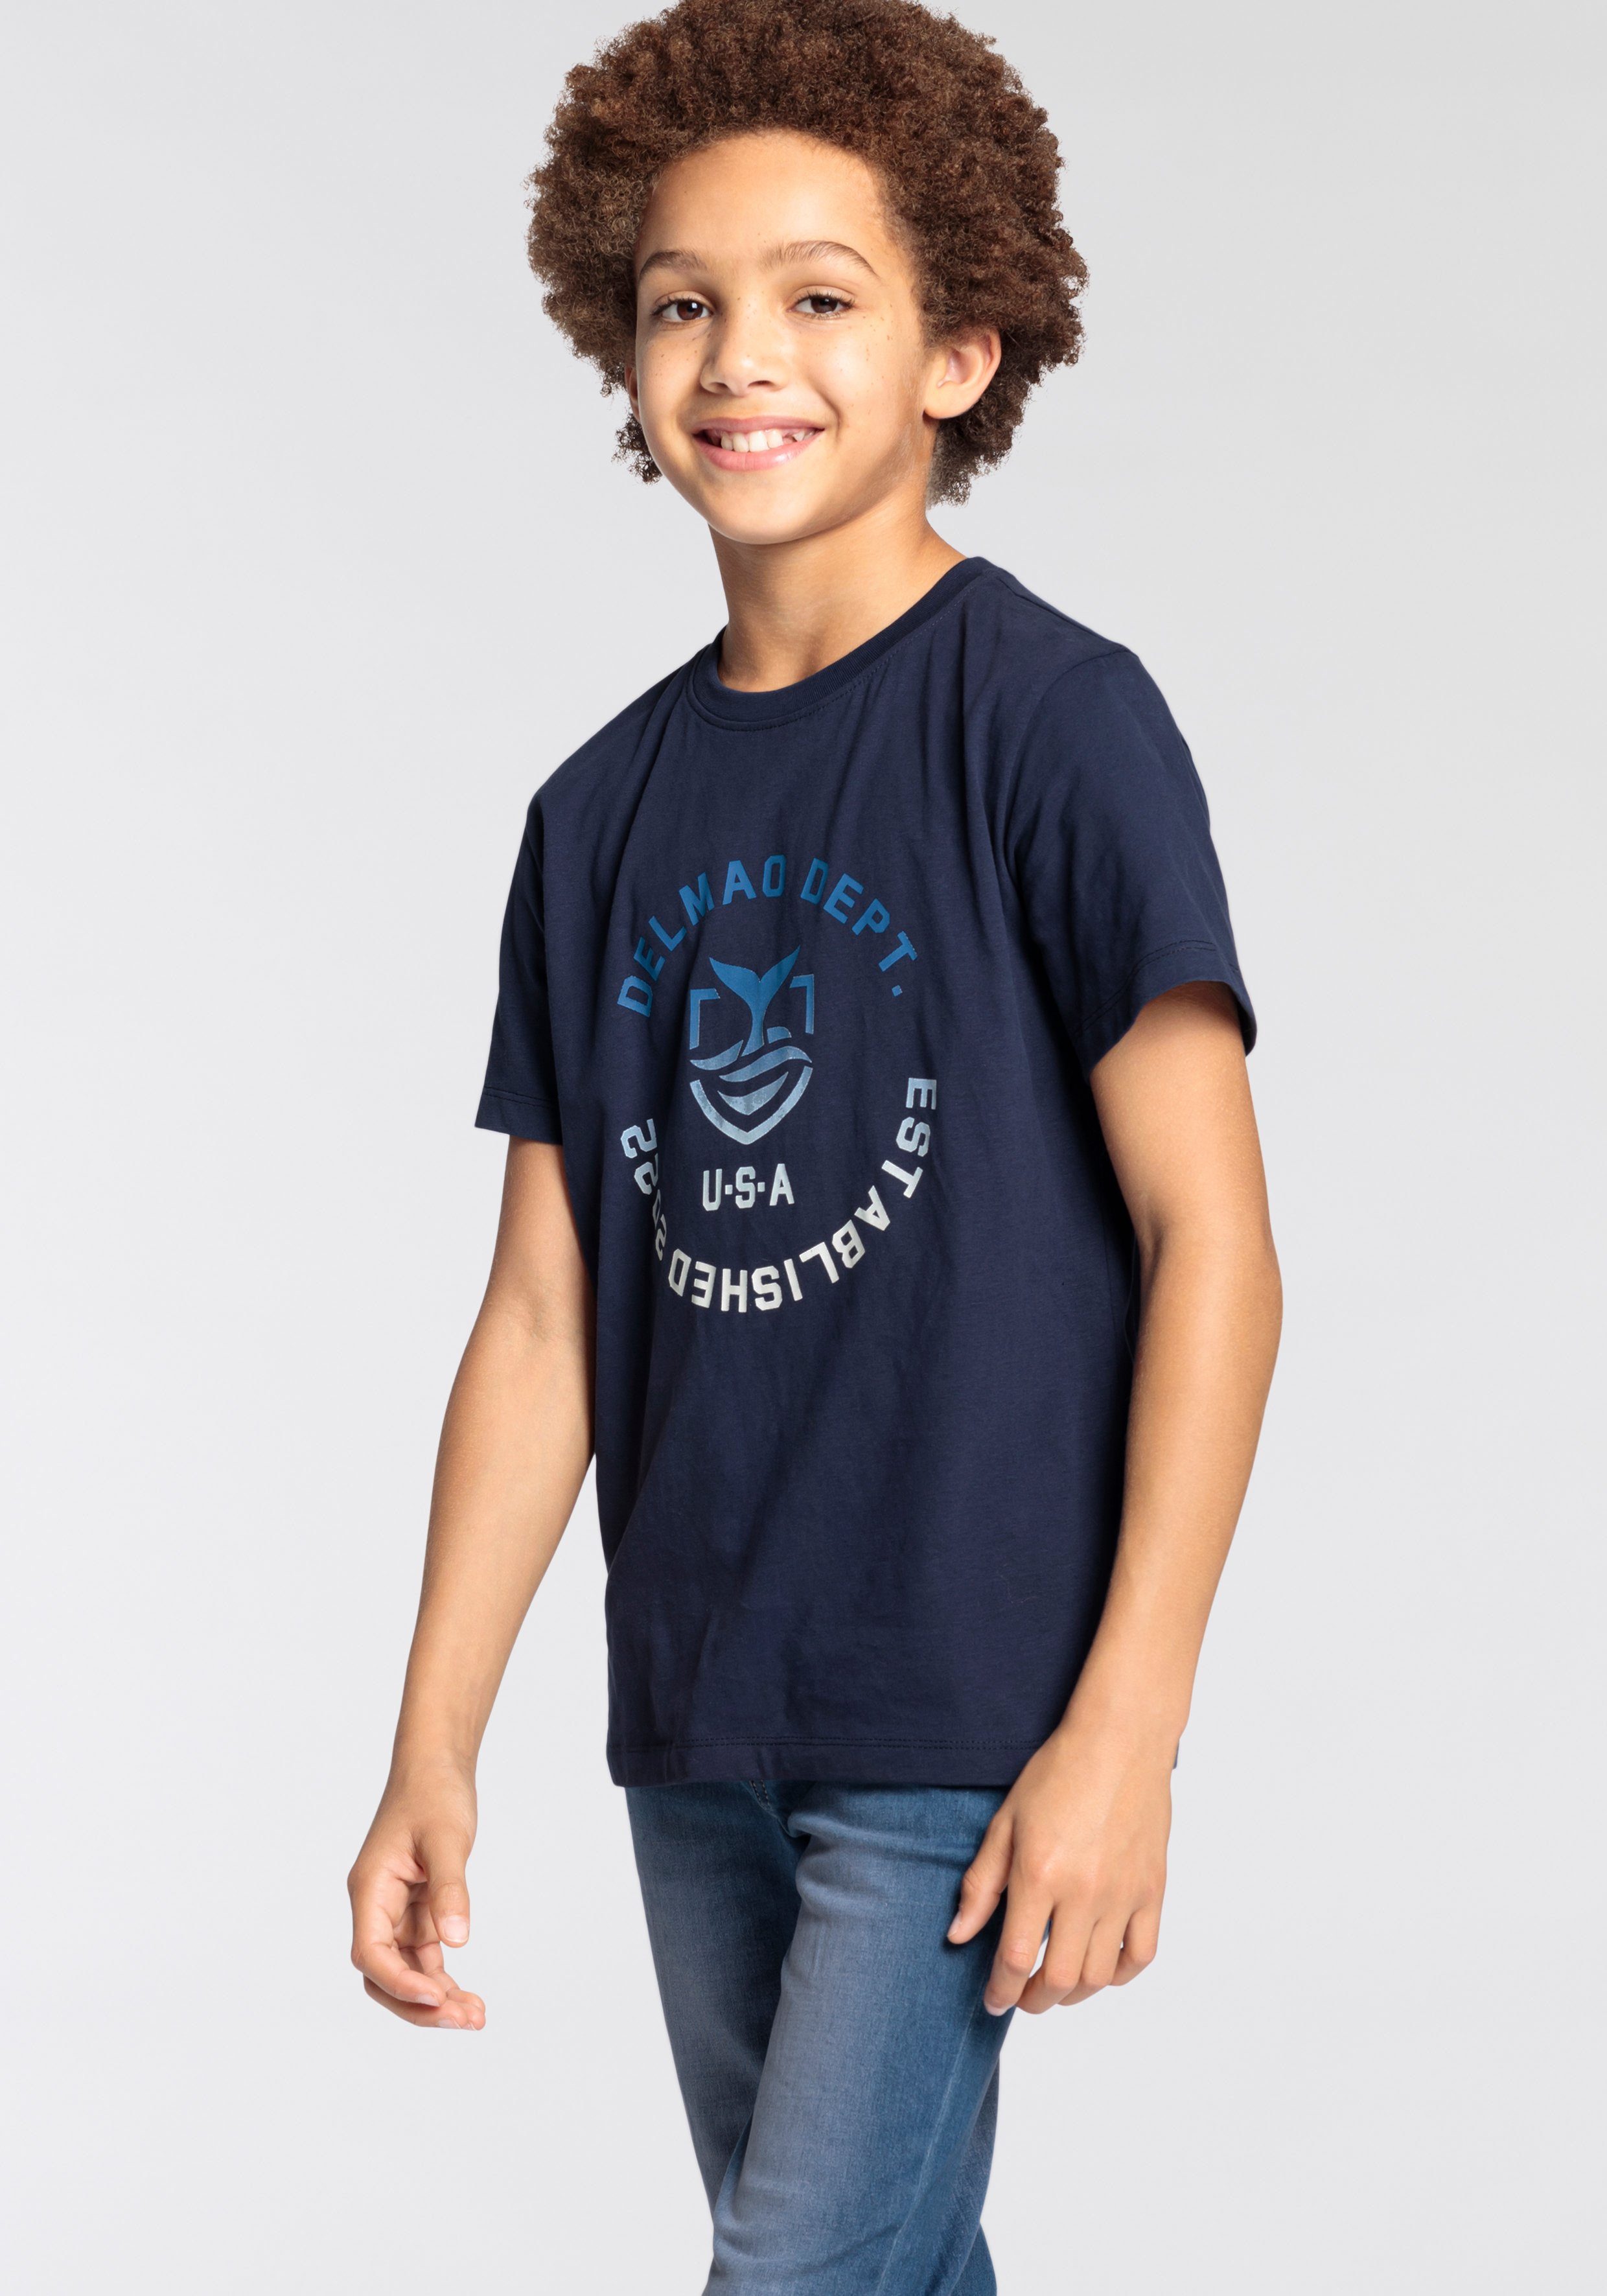 DELMAO T-Shirt für Jungen, mit Logodruck Mit MARKE, vorn Logo-Print. großem NEUE